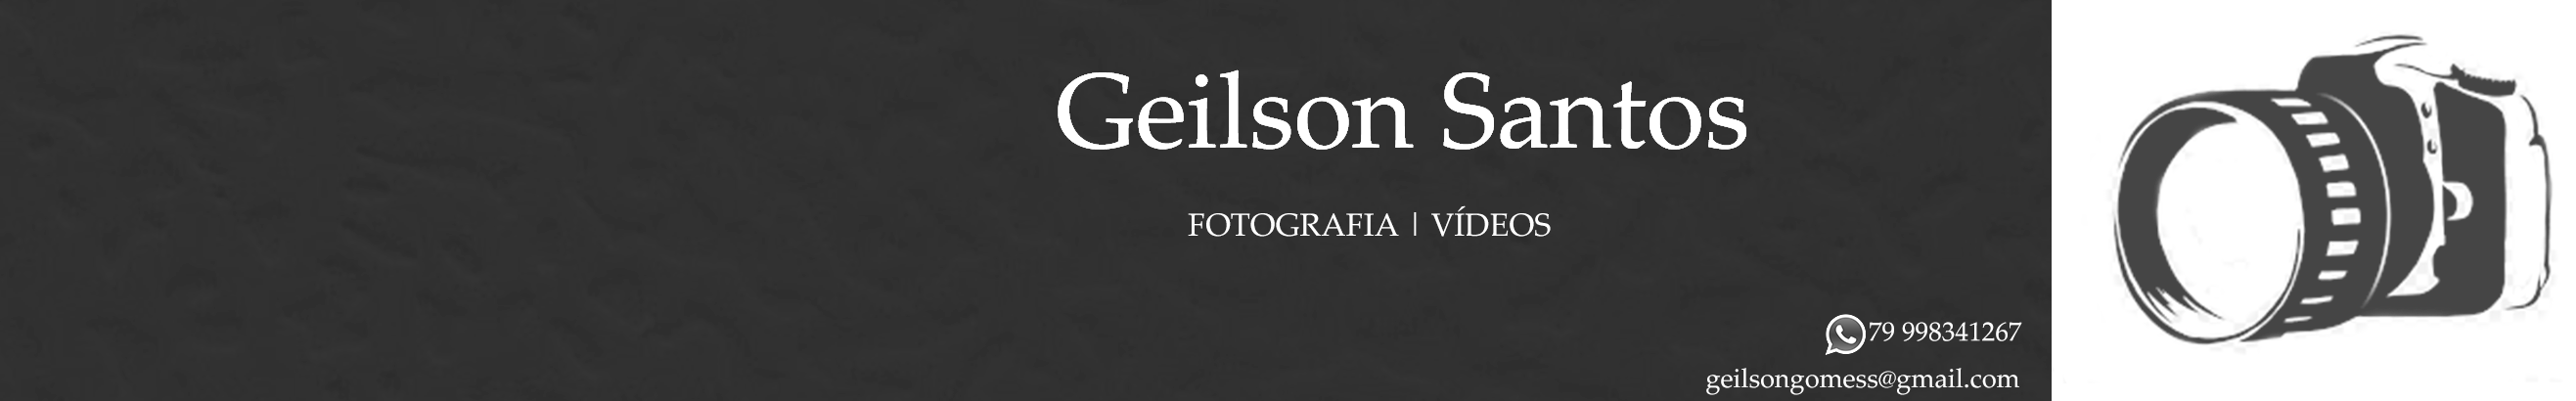 Geilson Santos 的個人檔案橫幅